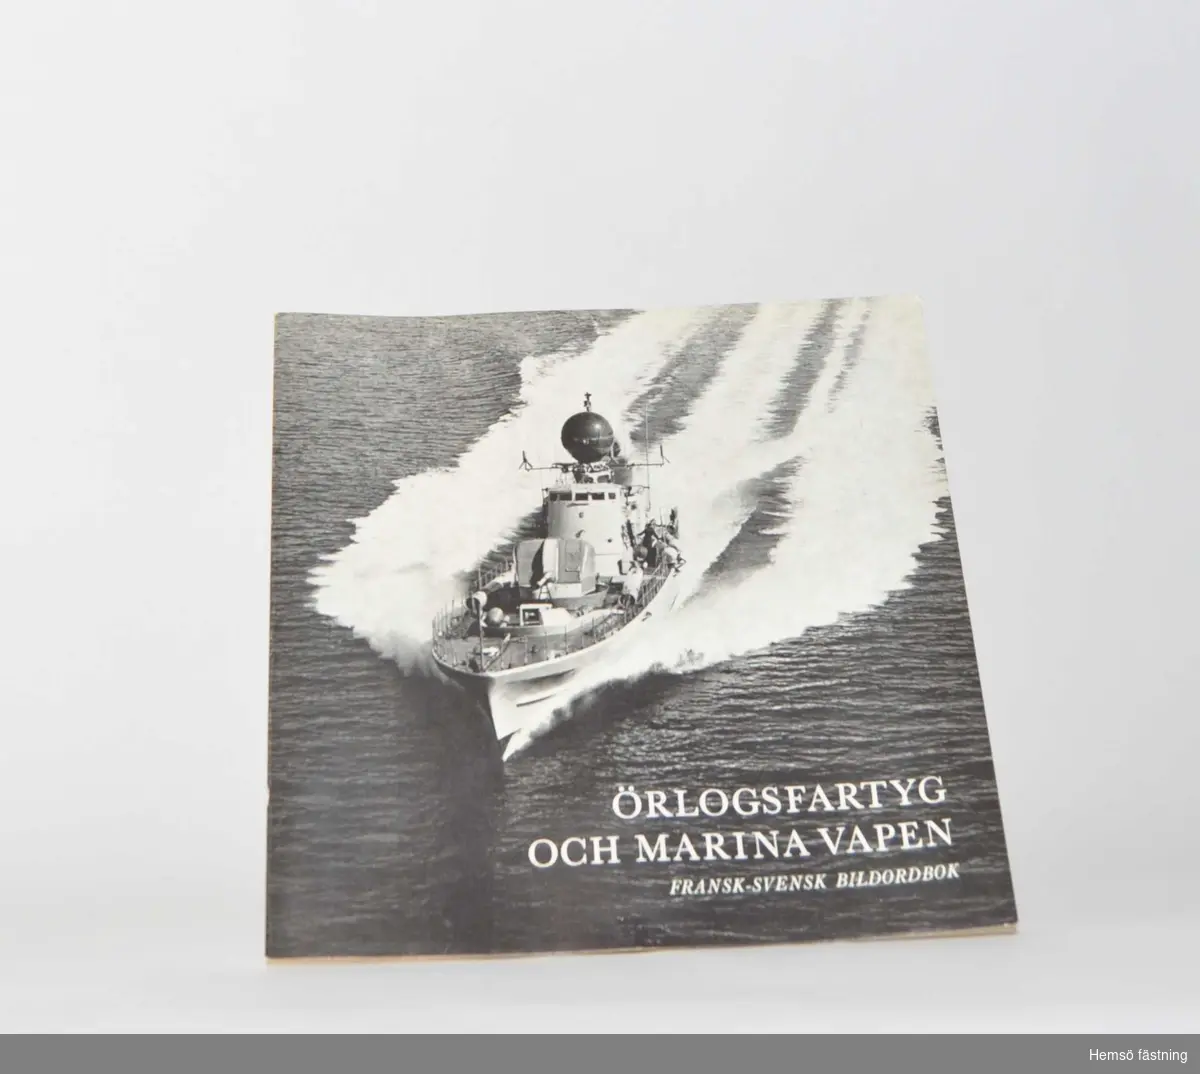 Örlogsfartyg och marina vapen, Fransk-Svensk Bildordbok.